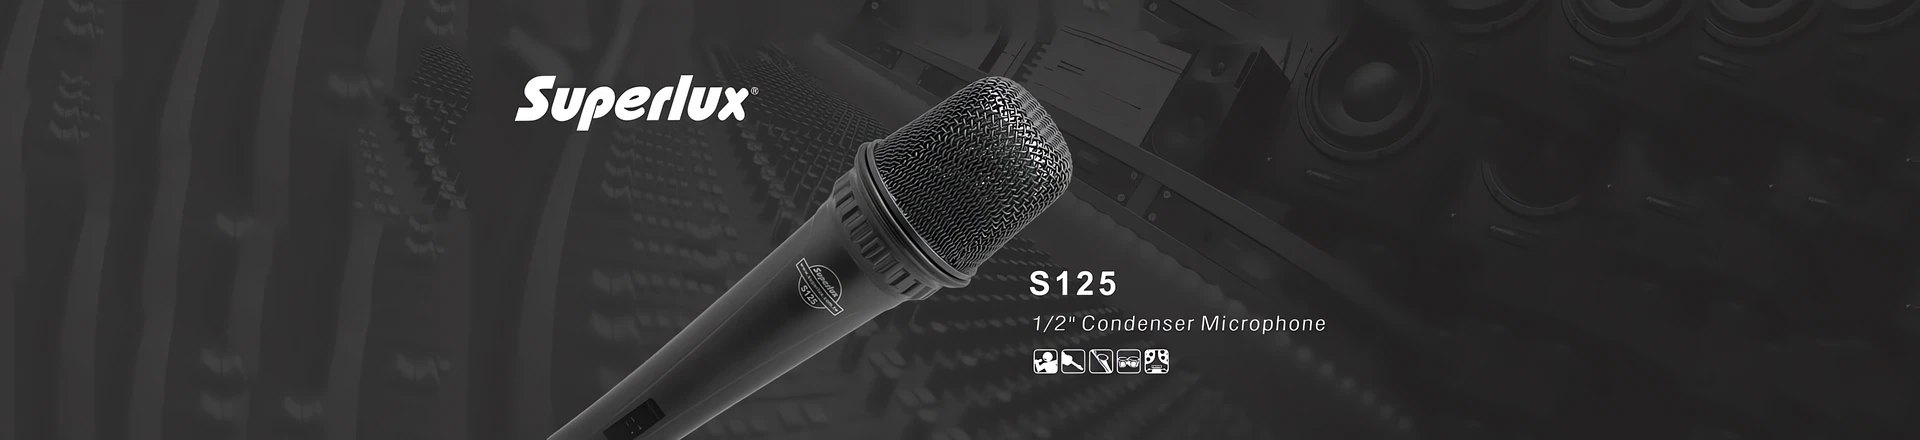 Superlux S125 - Zwykły mikrofon wokalny? Nic bardziej mylnego!